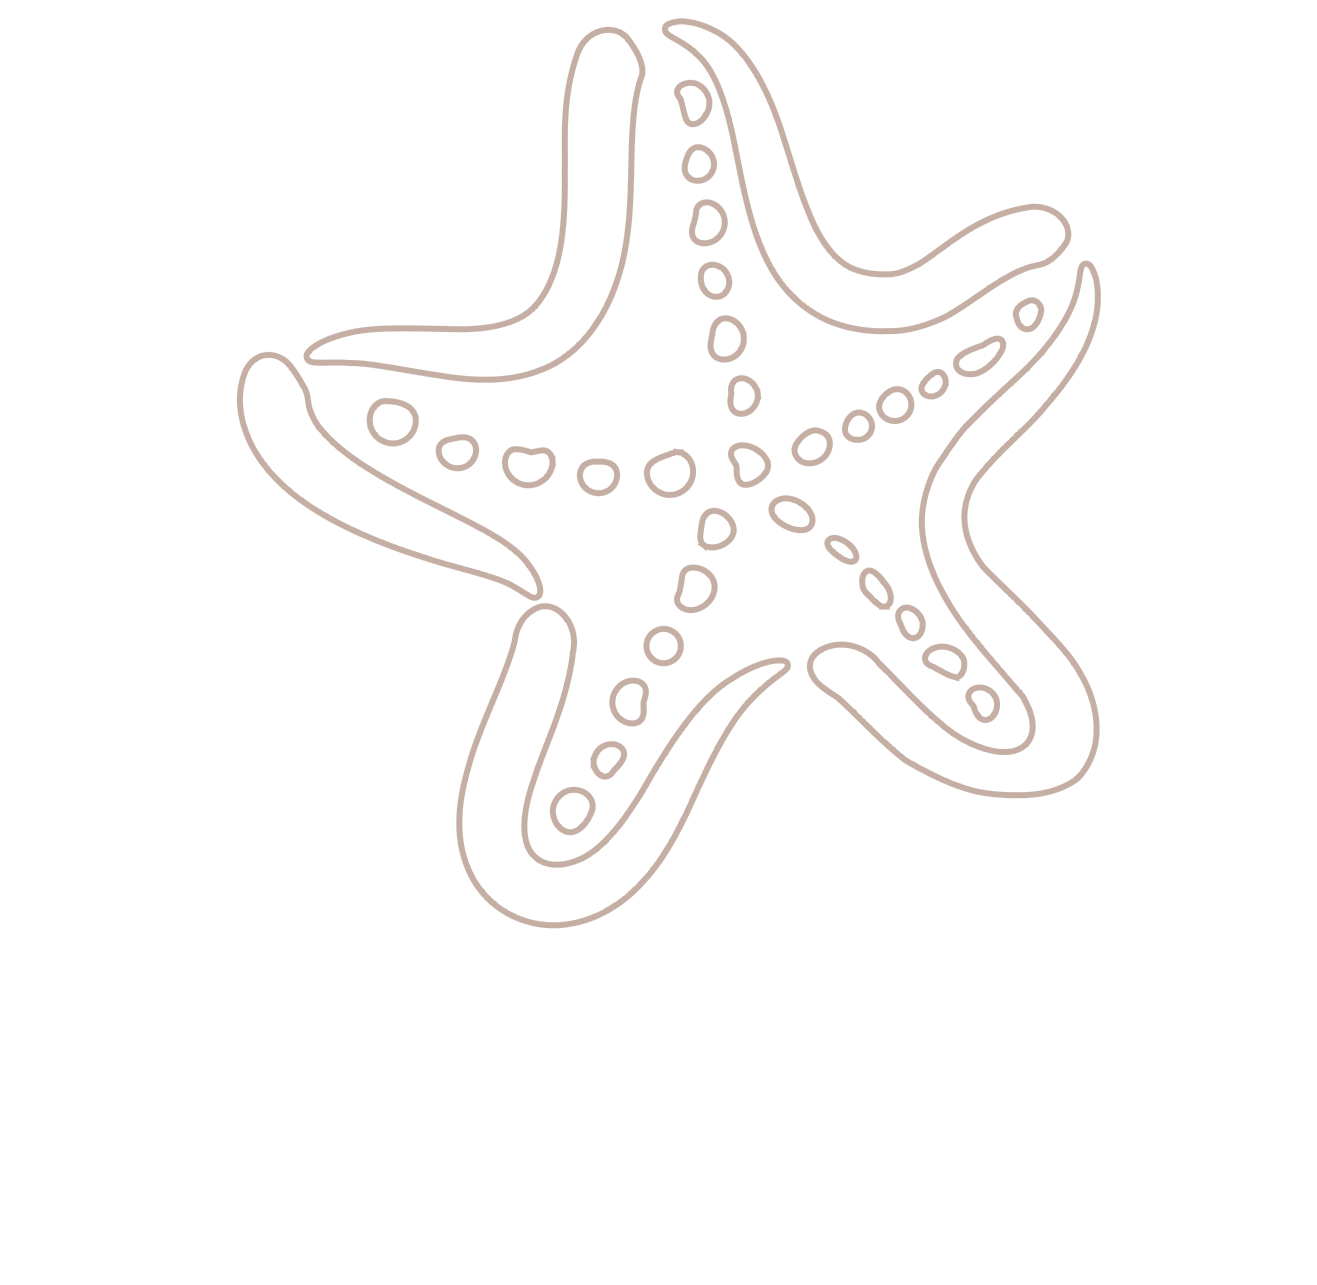 Starfish Recovery & Wellness